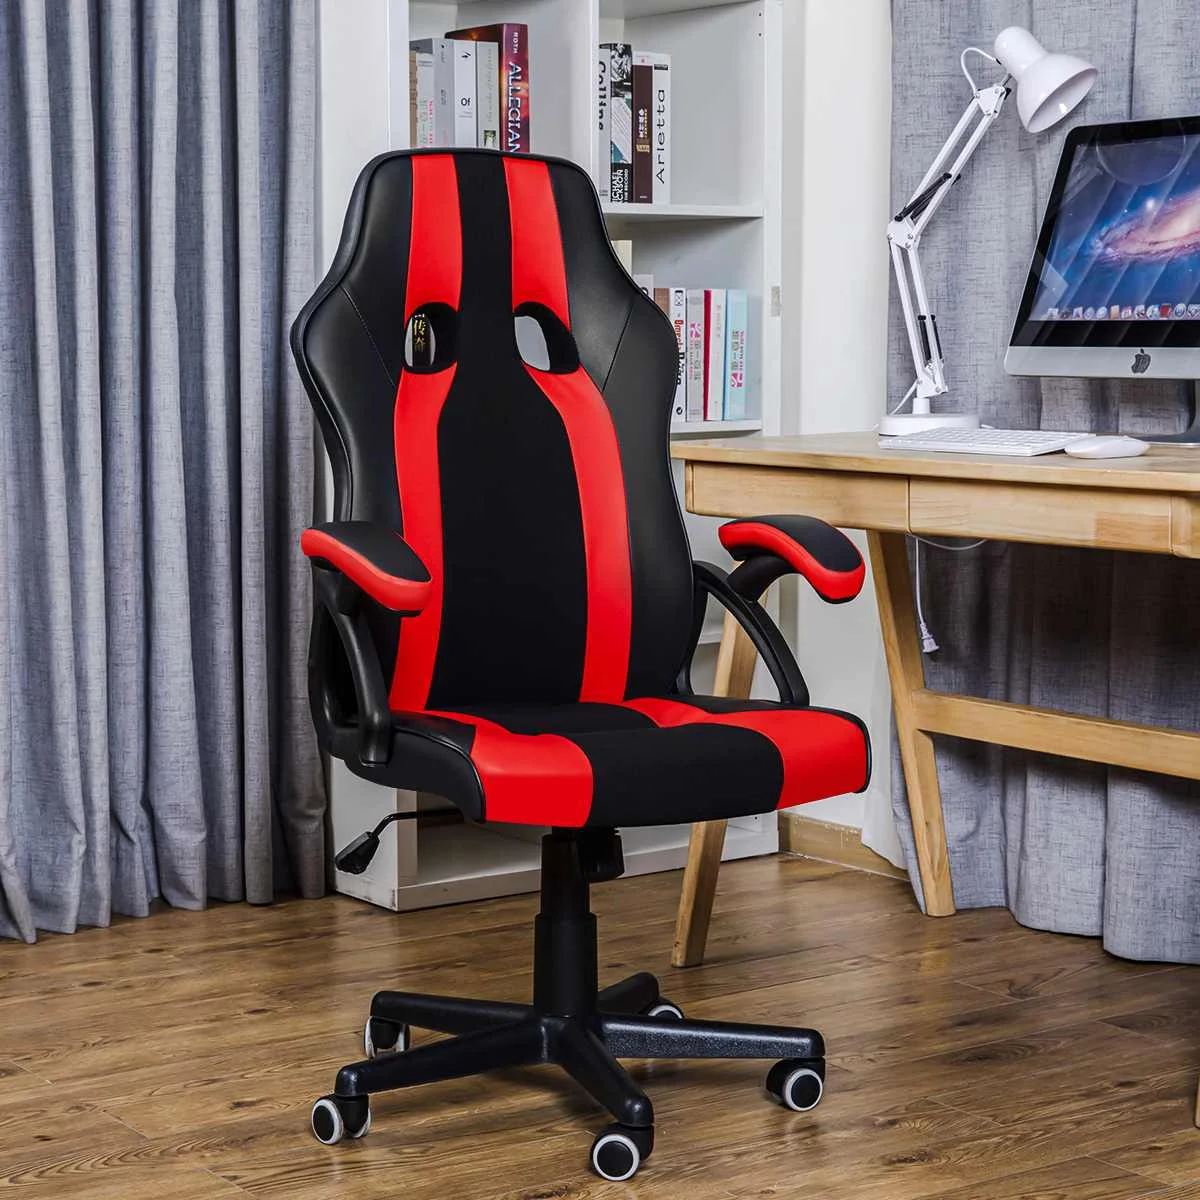 

Офисные стулья, регулируемое вращающееся игровое кресло с высокой спинкой, офисное кресло руководителя, компьютерные кресла Chiase Gaming